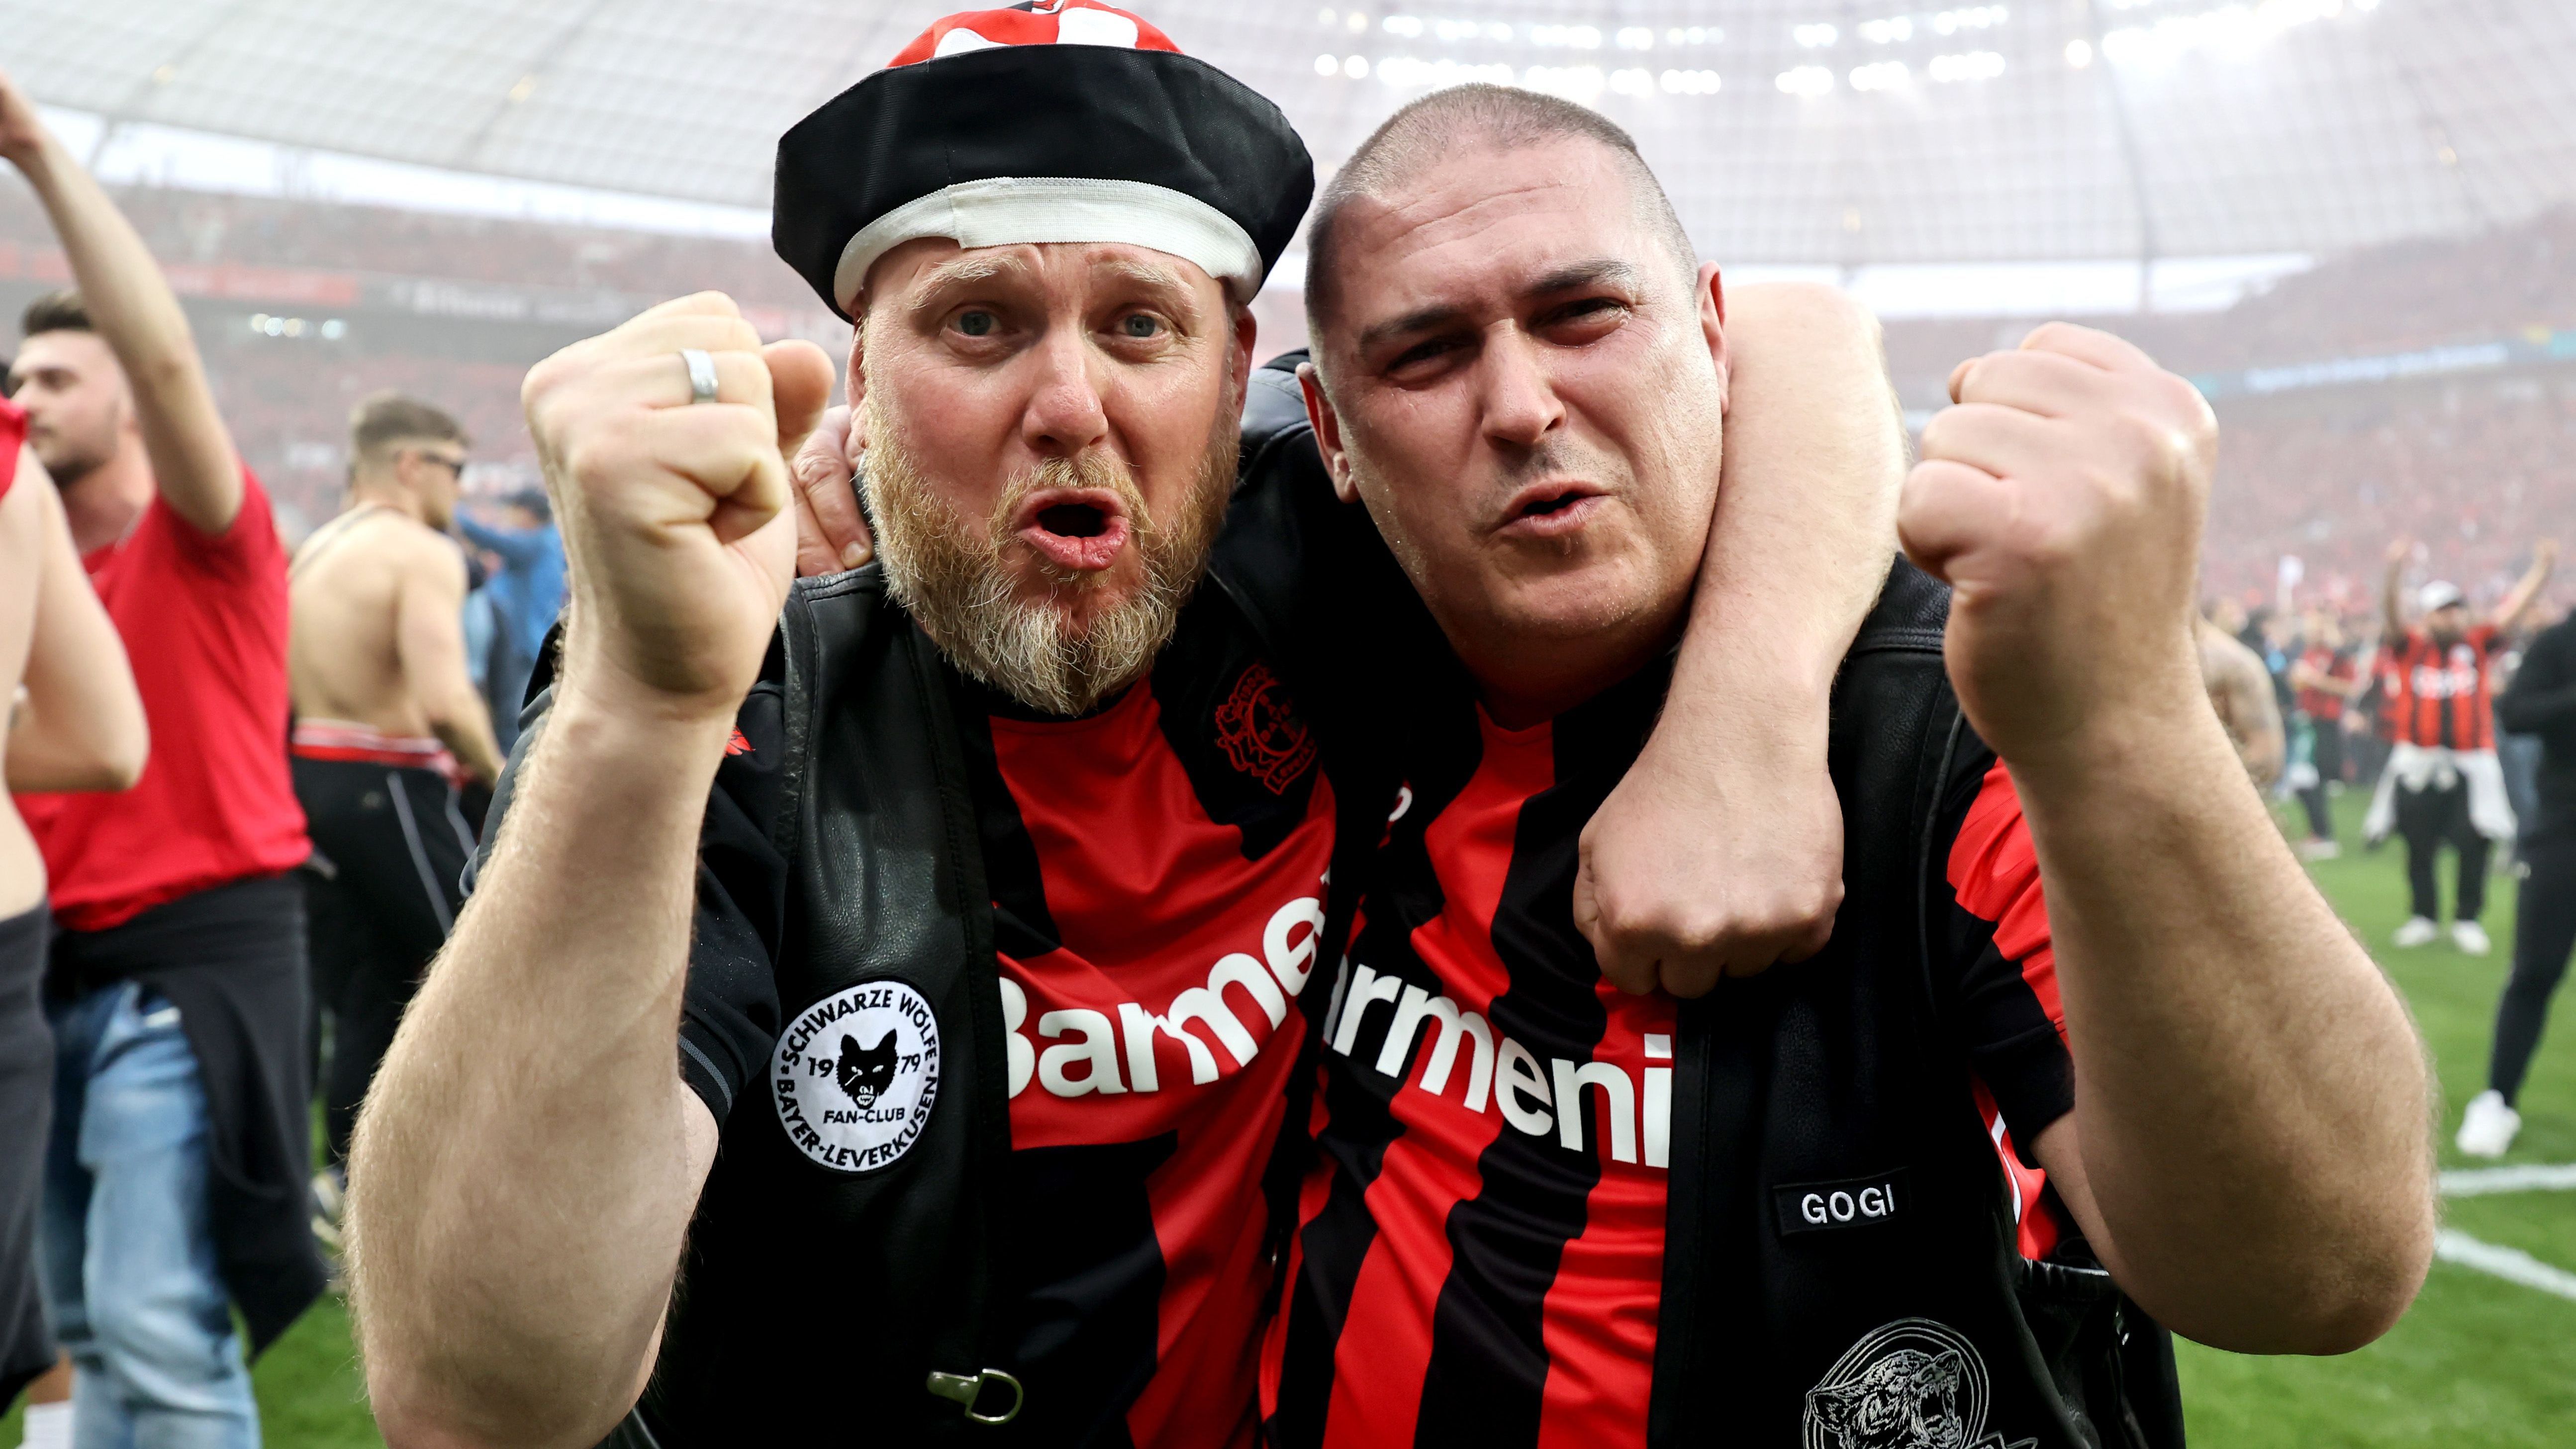 <strong>Bayer Leverkusen: Die besten Bilder der Meisterfeier</strong><br>Diese beiden Fans wollen wohl die ganze Fußball-Welt abknutschen.